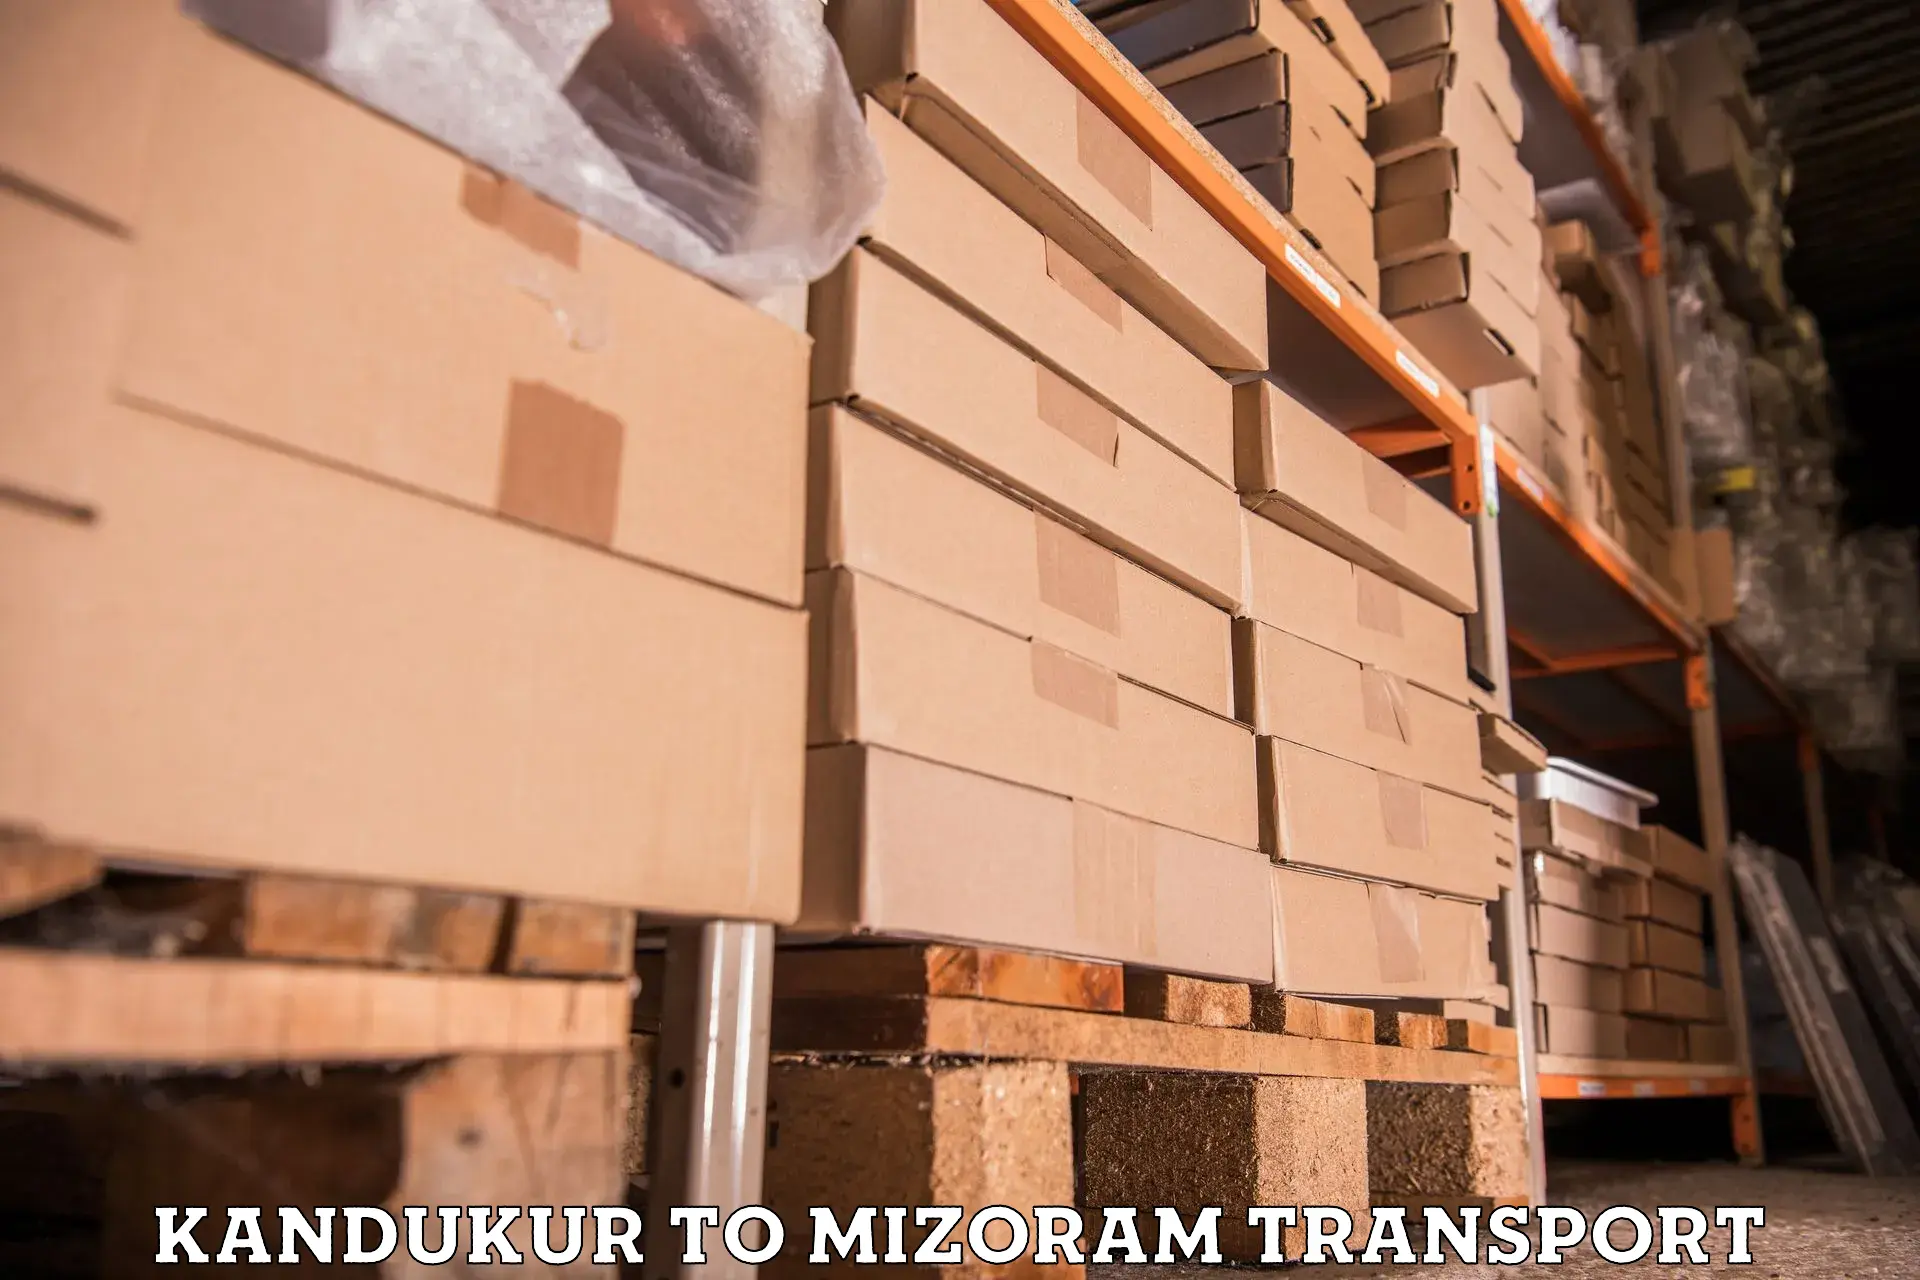 Transport in sharing Kandukur to Mizoram